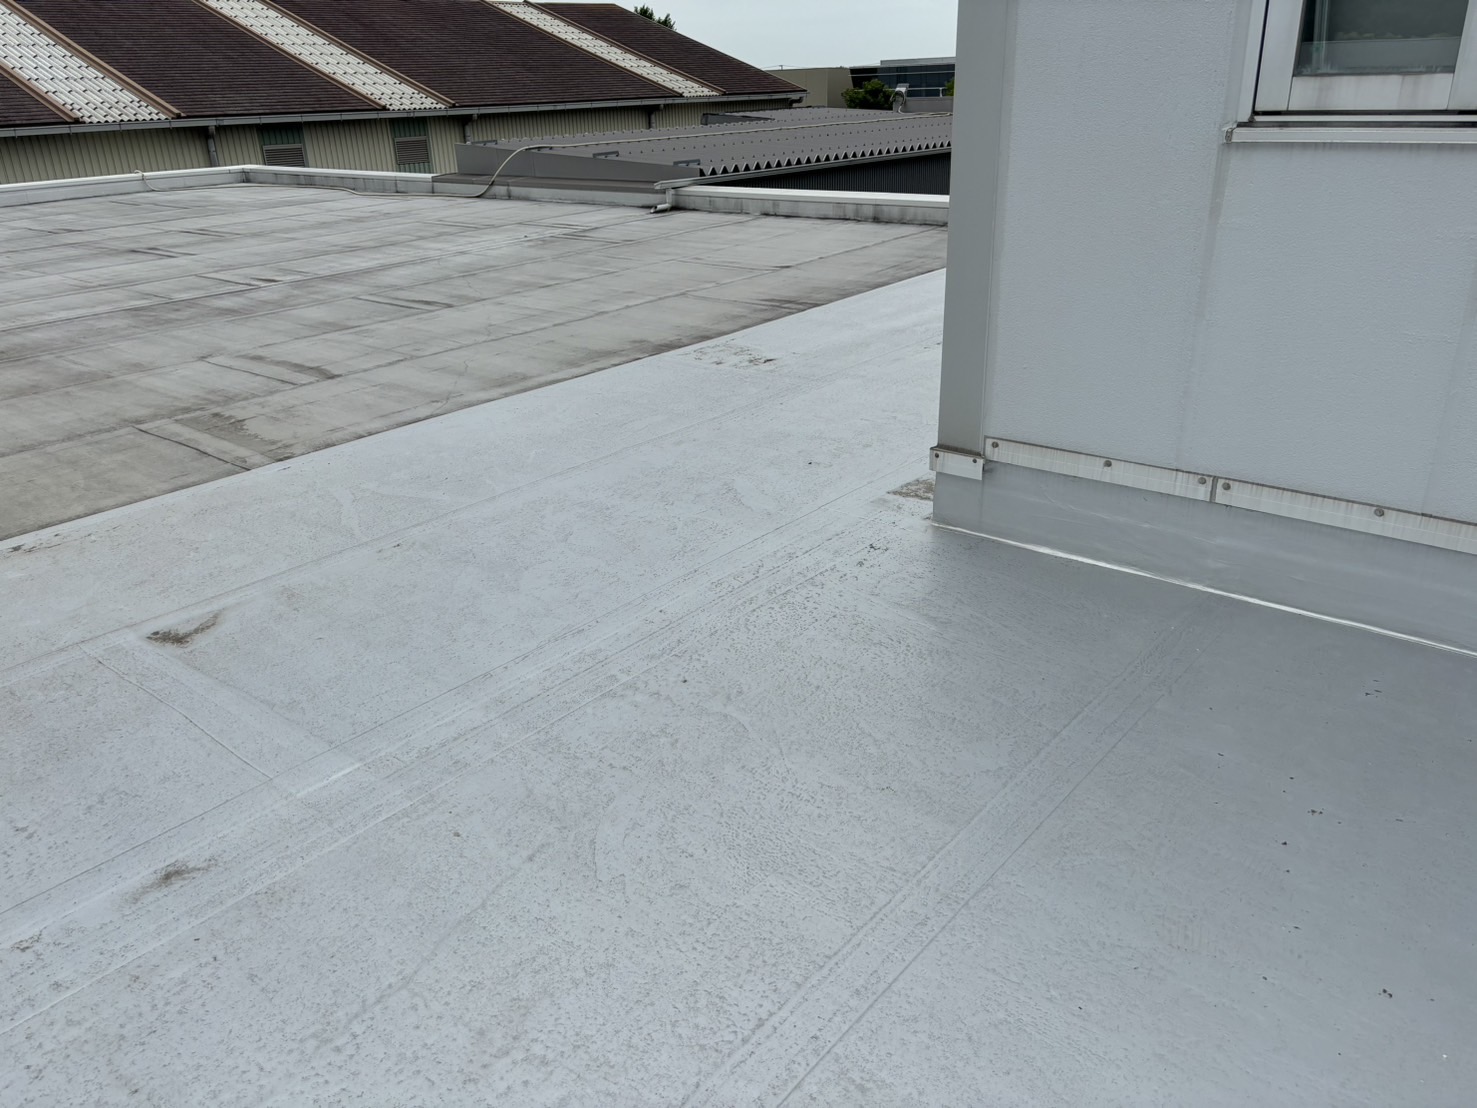 津市にて会社オフィス屋上の陸屋根防水、劣化したシート防水と、防水工事を行った箇所